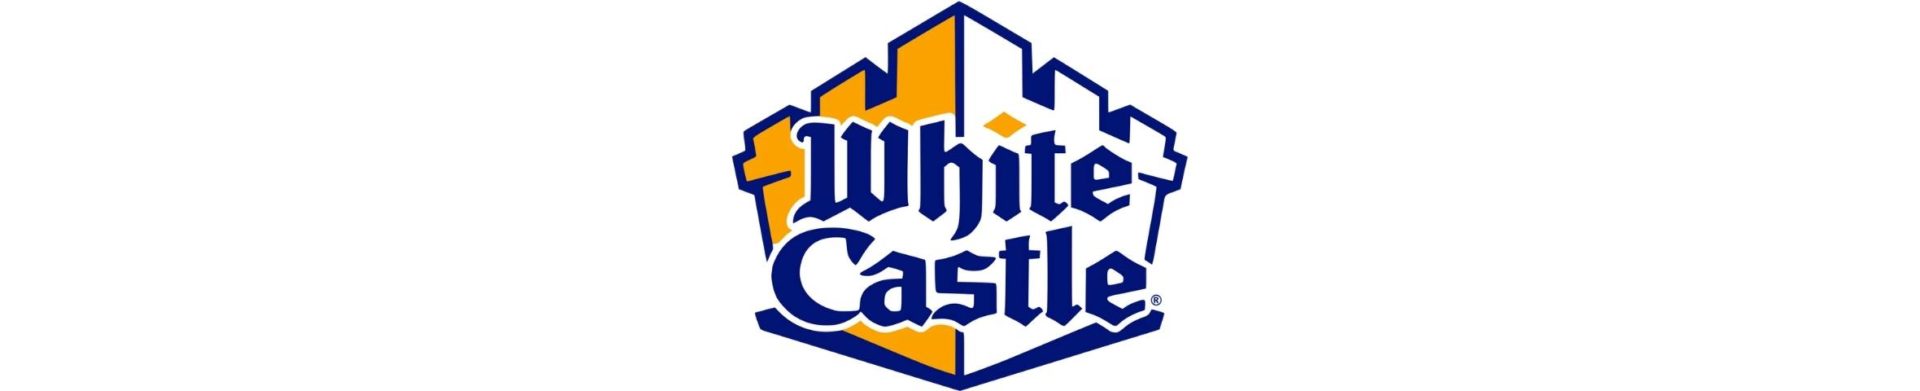 White Castle's logo